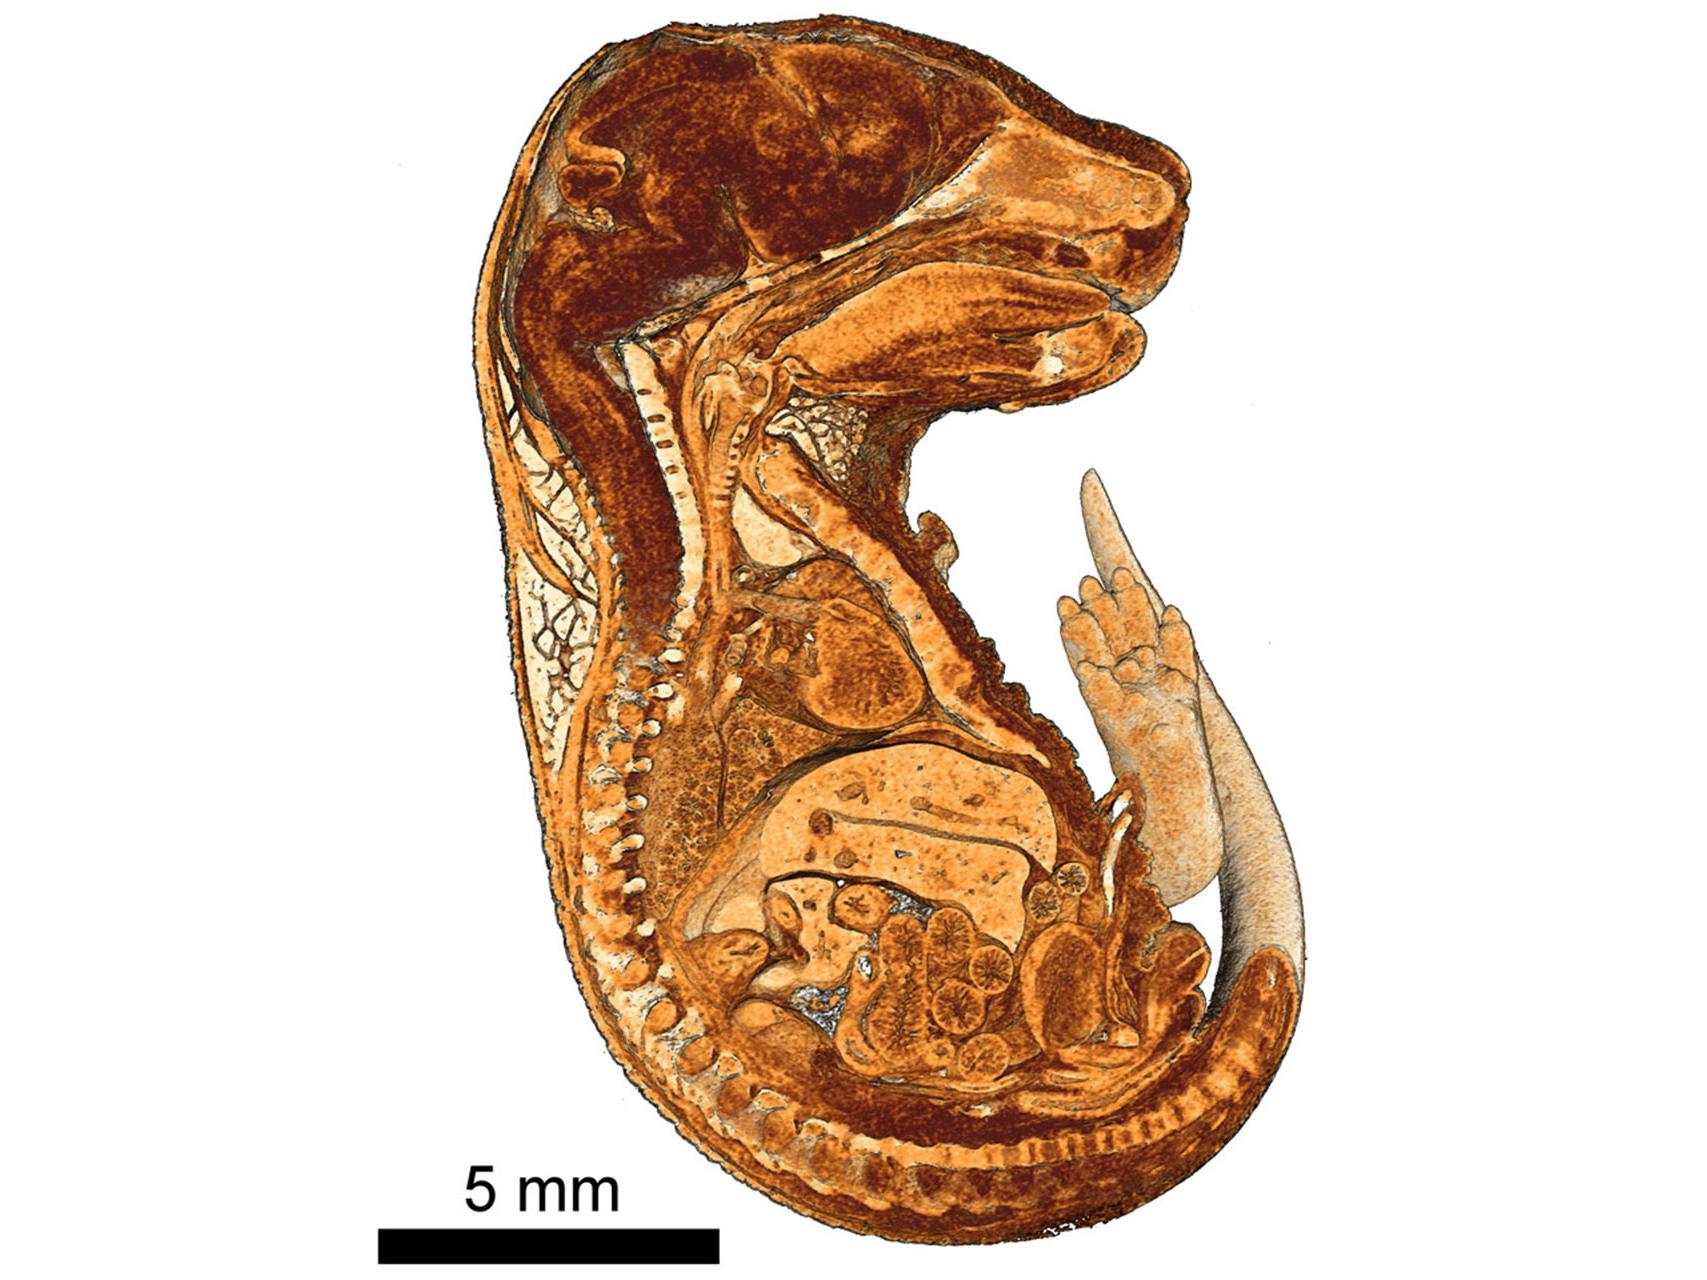 パラフィンに埋包されたマウス胚の3Dレンダリングの断面図